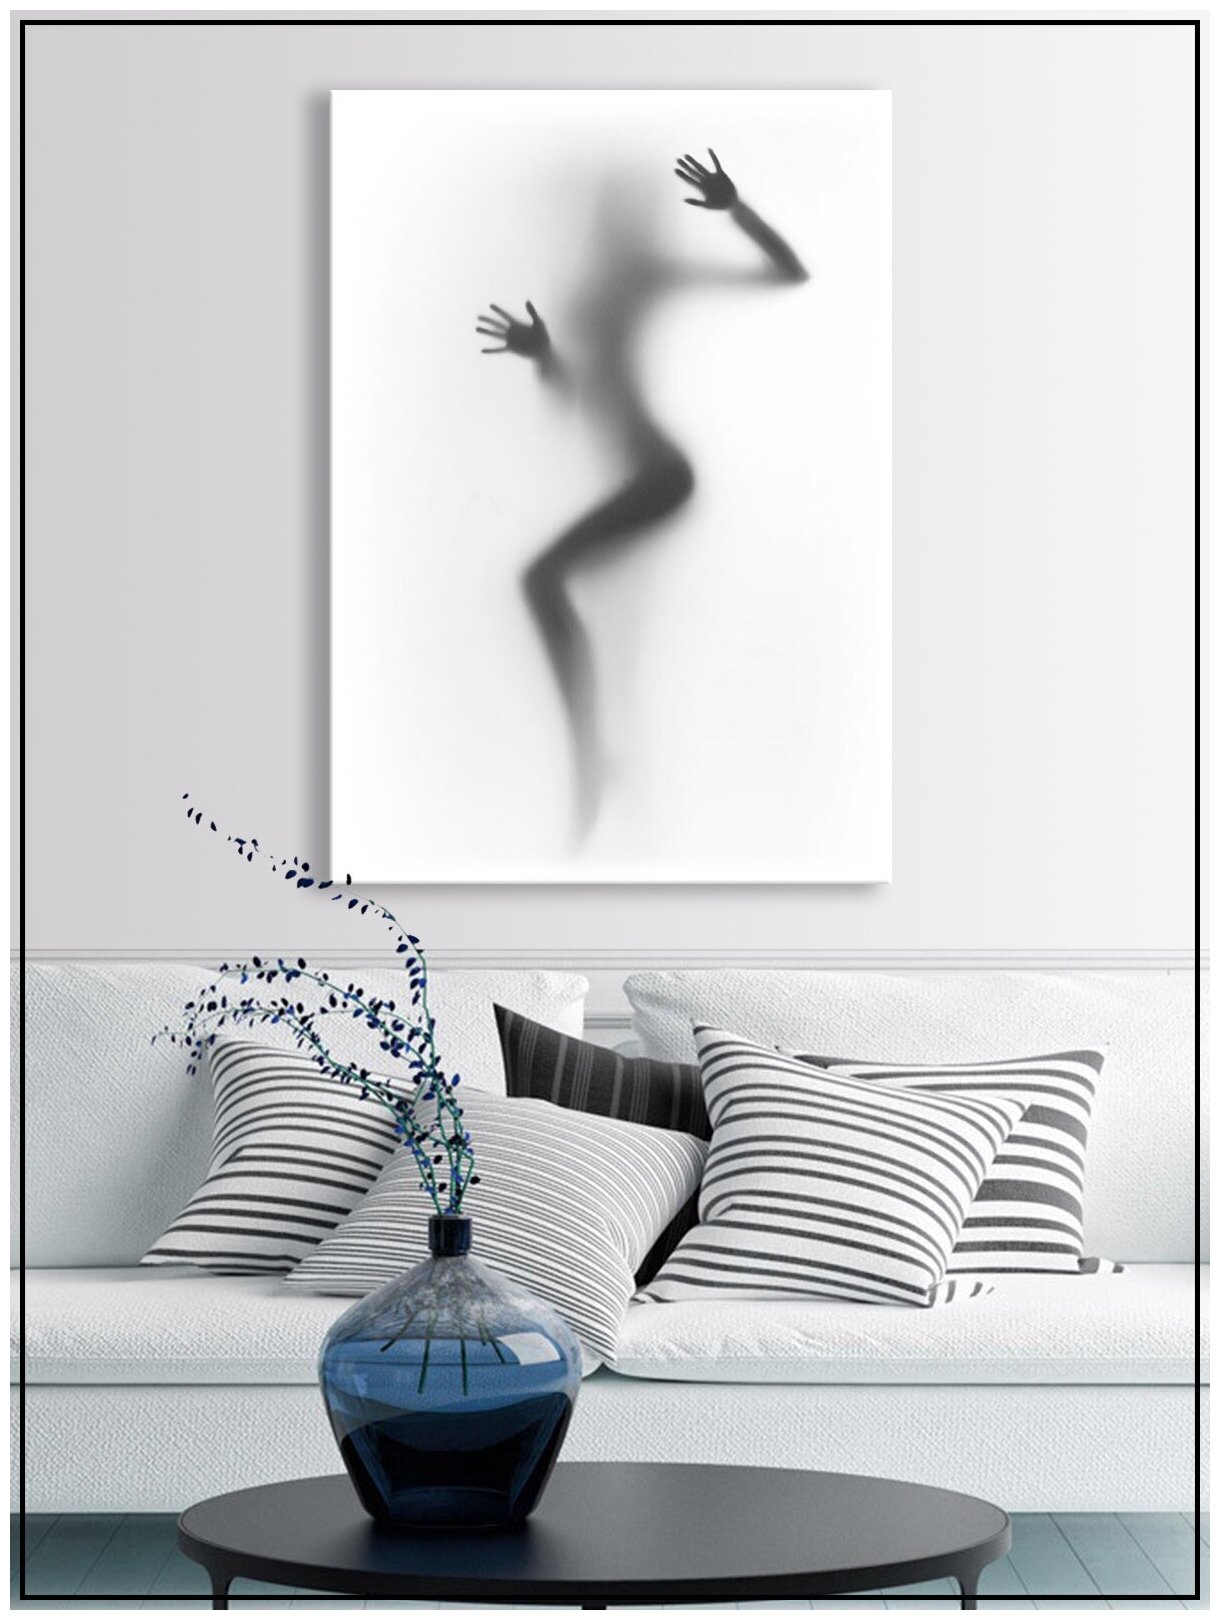 Картина для интерьера на натуральном хлопковом холсте "Силуэт девушки за стеклом", 55*77см, холст на подрамнике, картина в подарок для дома